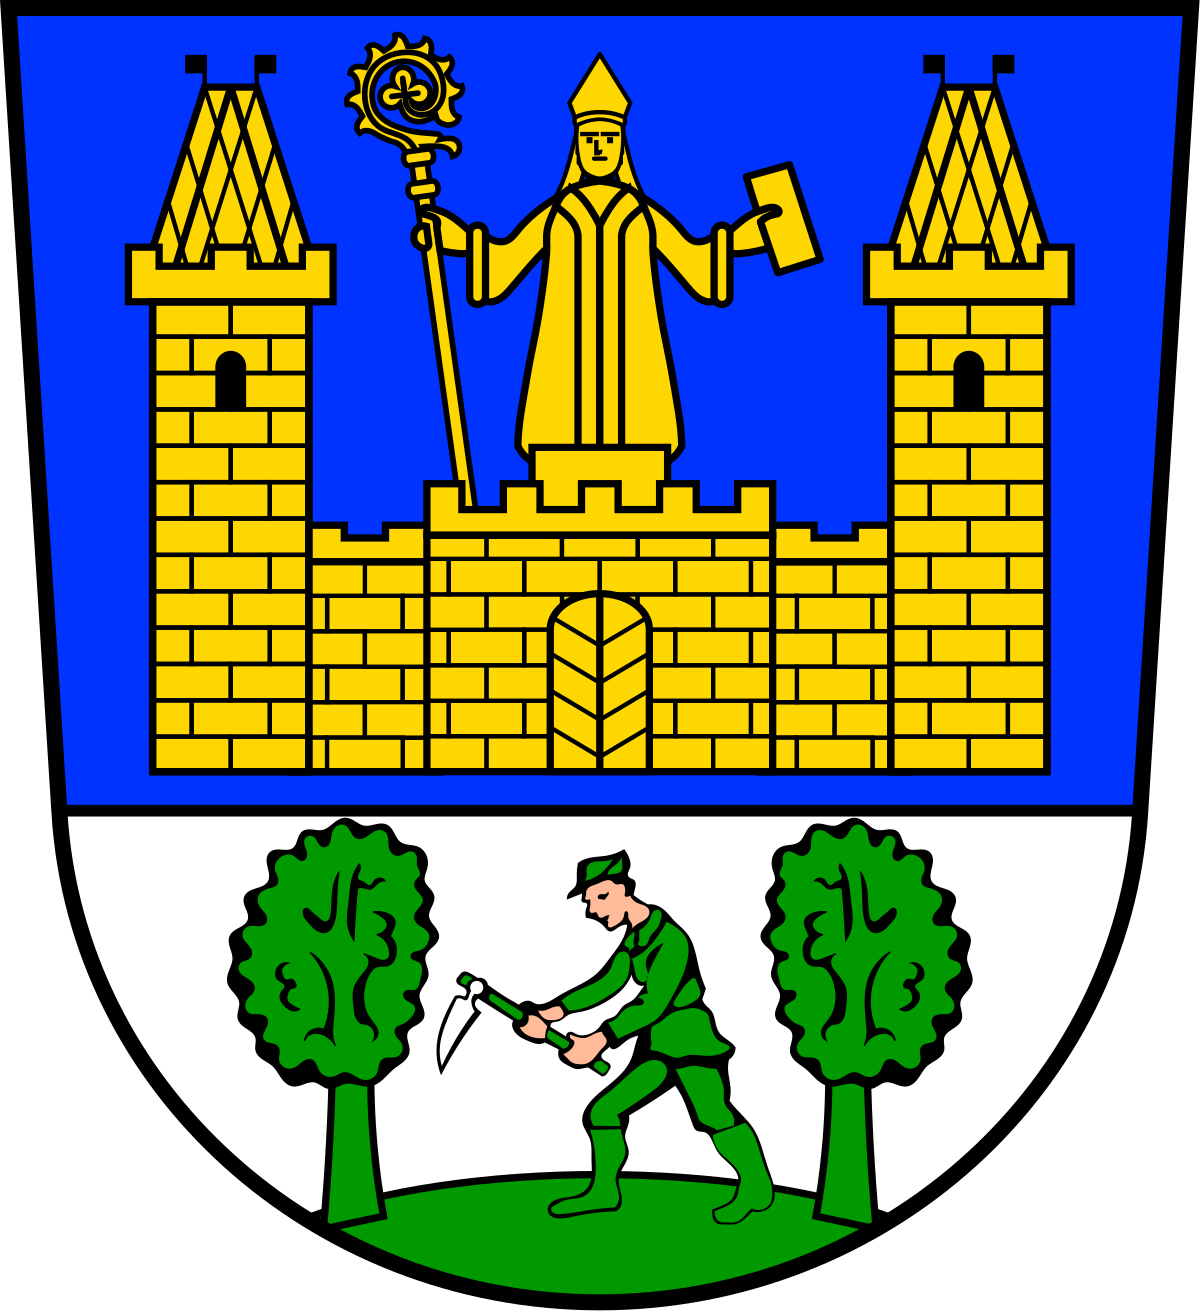 Wappen Tirschenreuth